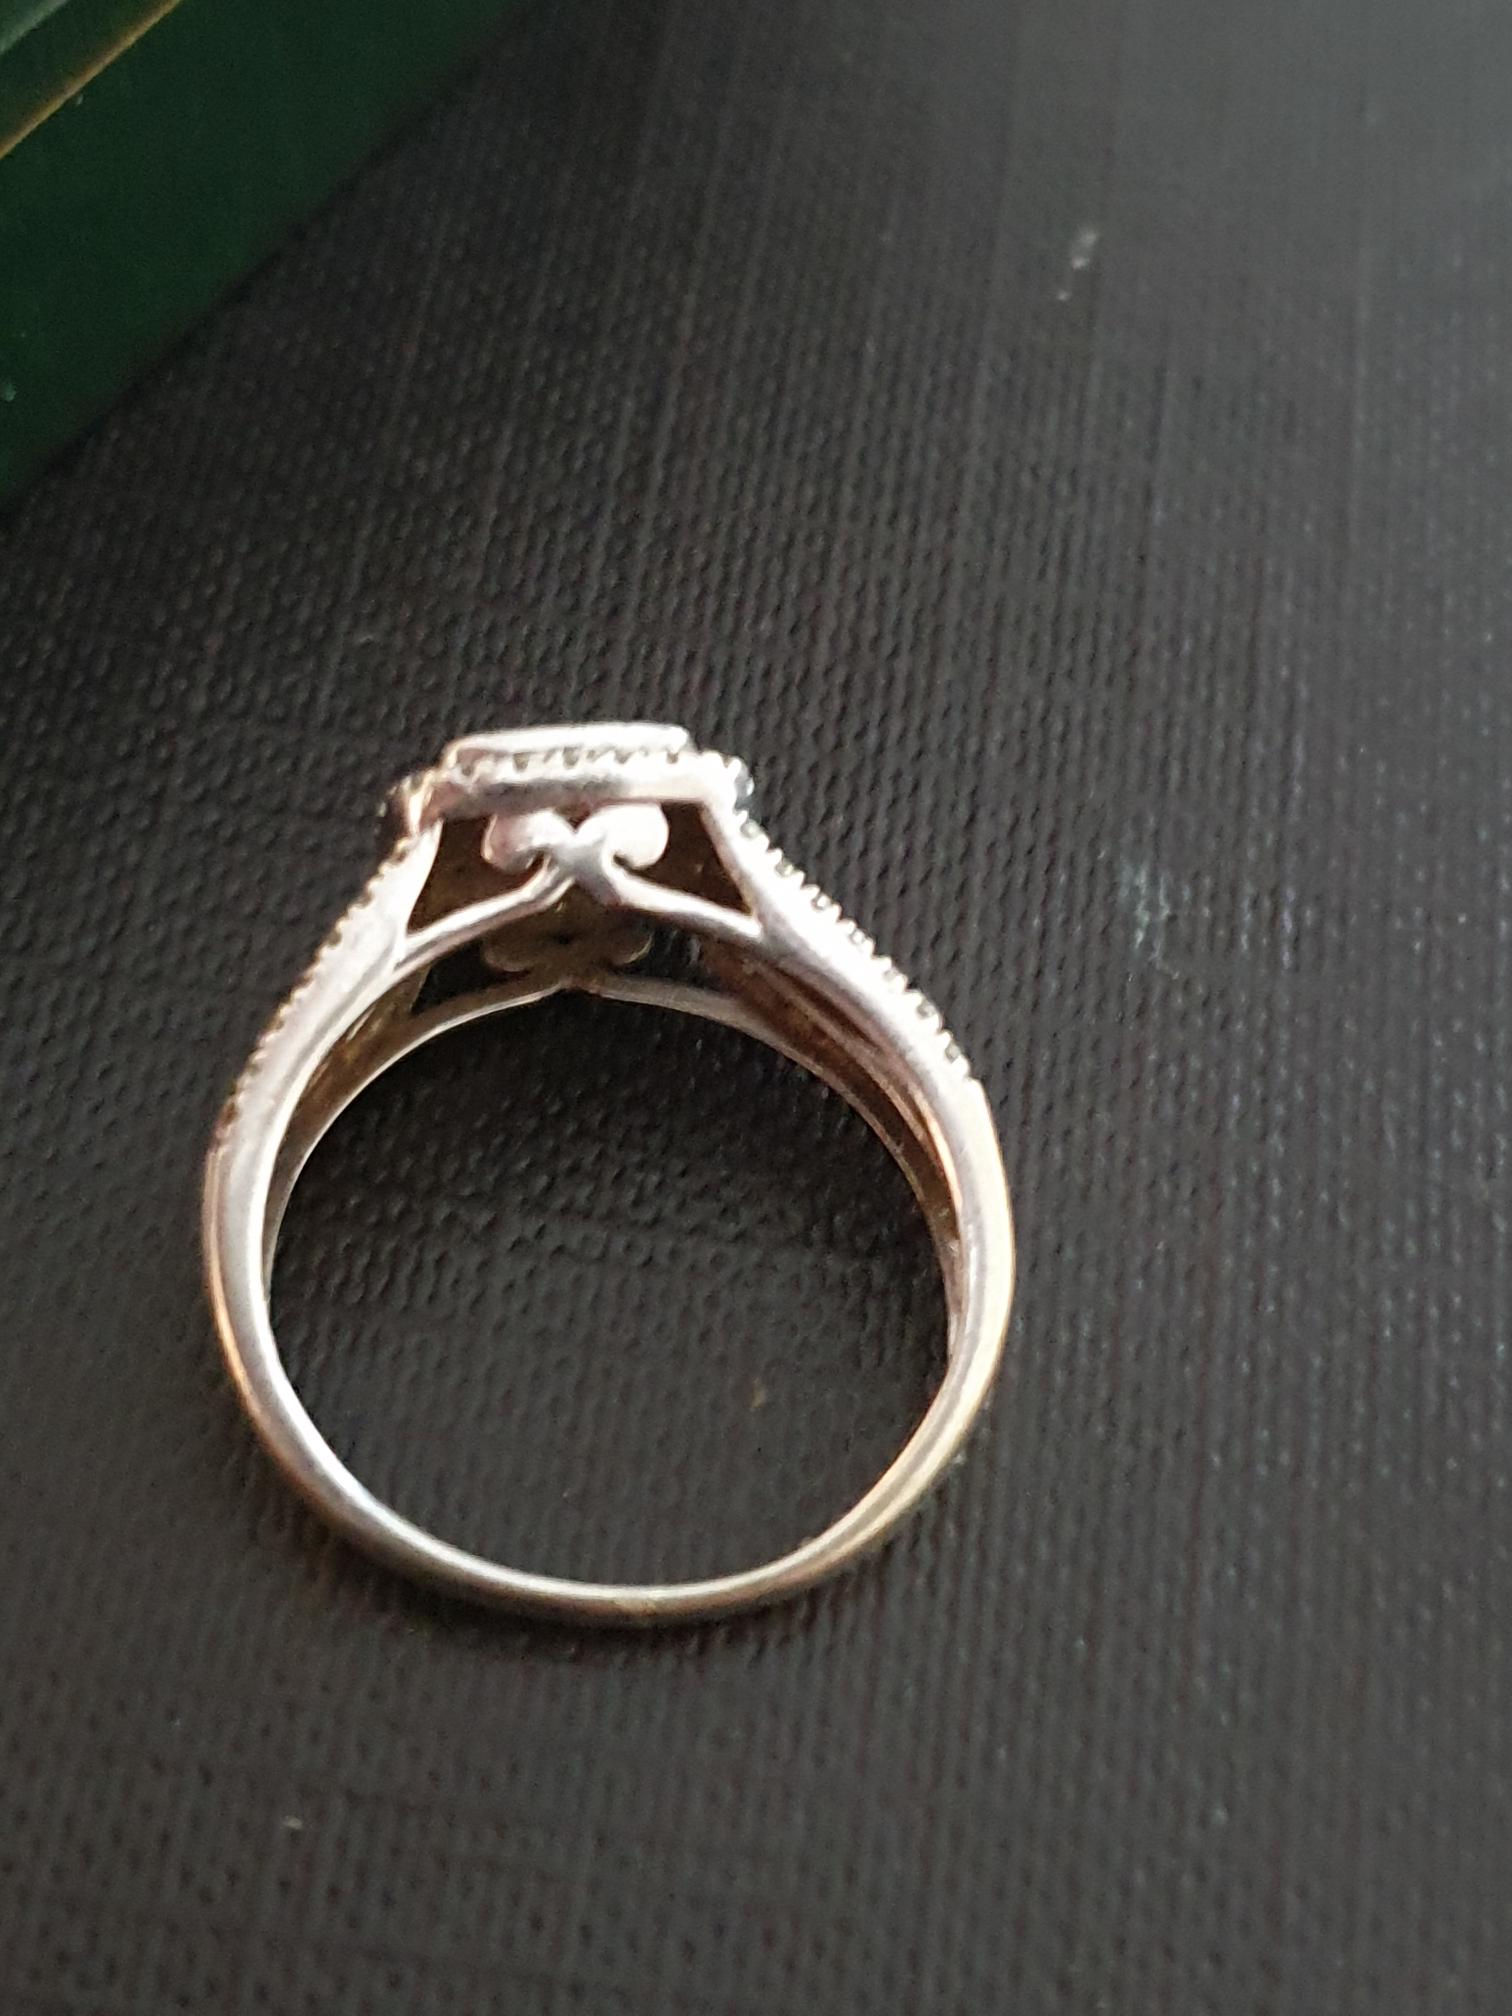 Ladies White Gold Diamond Ring - Image 11 of 11